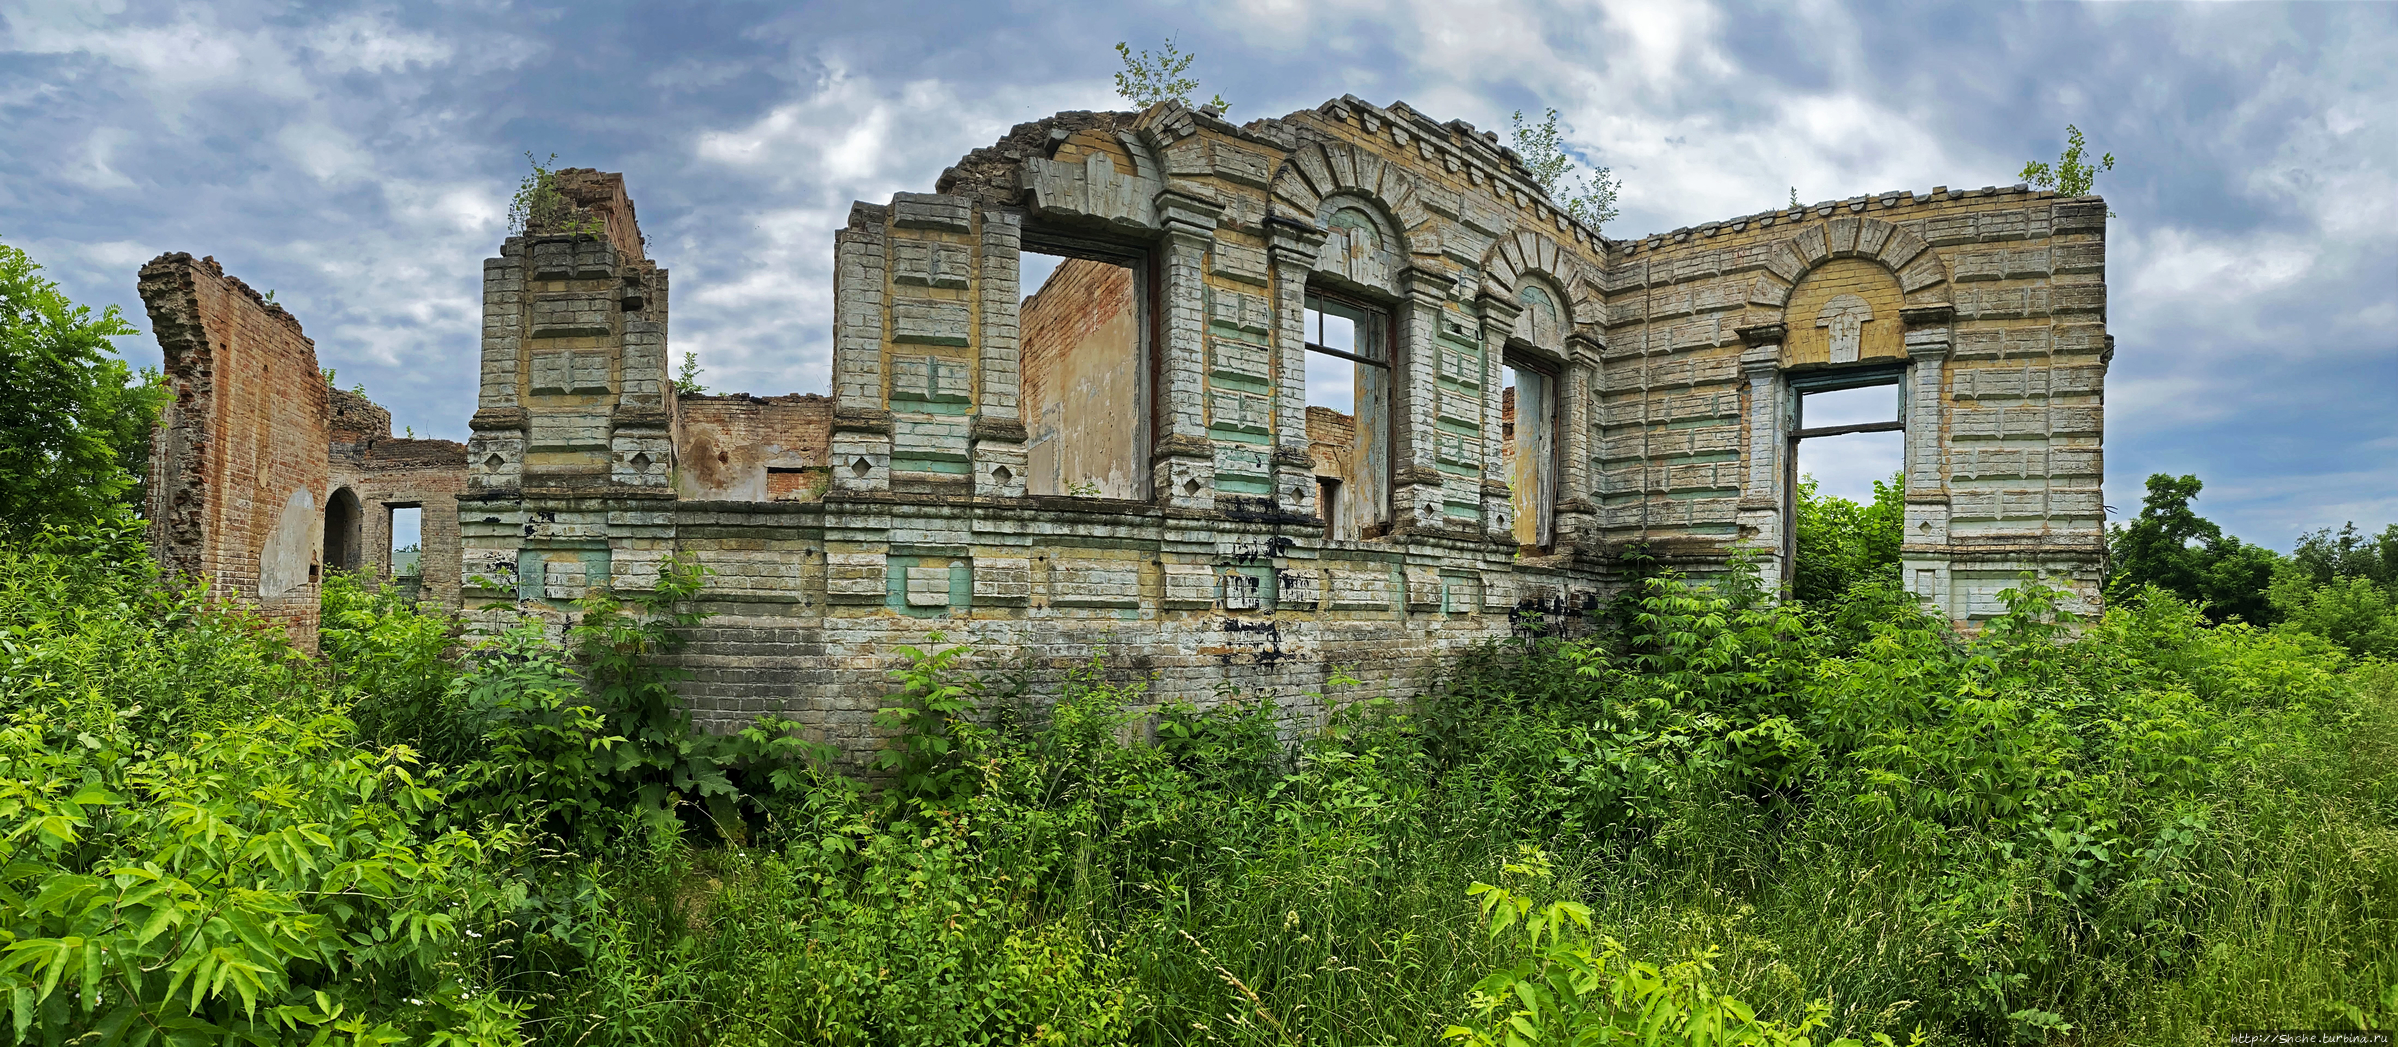 Развалины усадьбы рода Остен-Сакен Немешаево, Украина